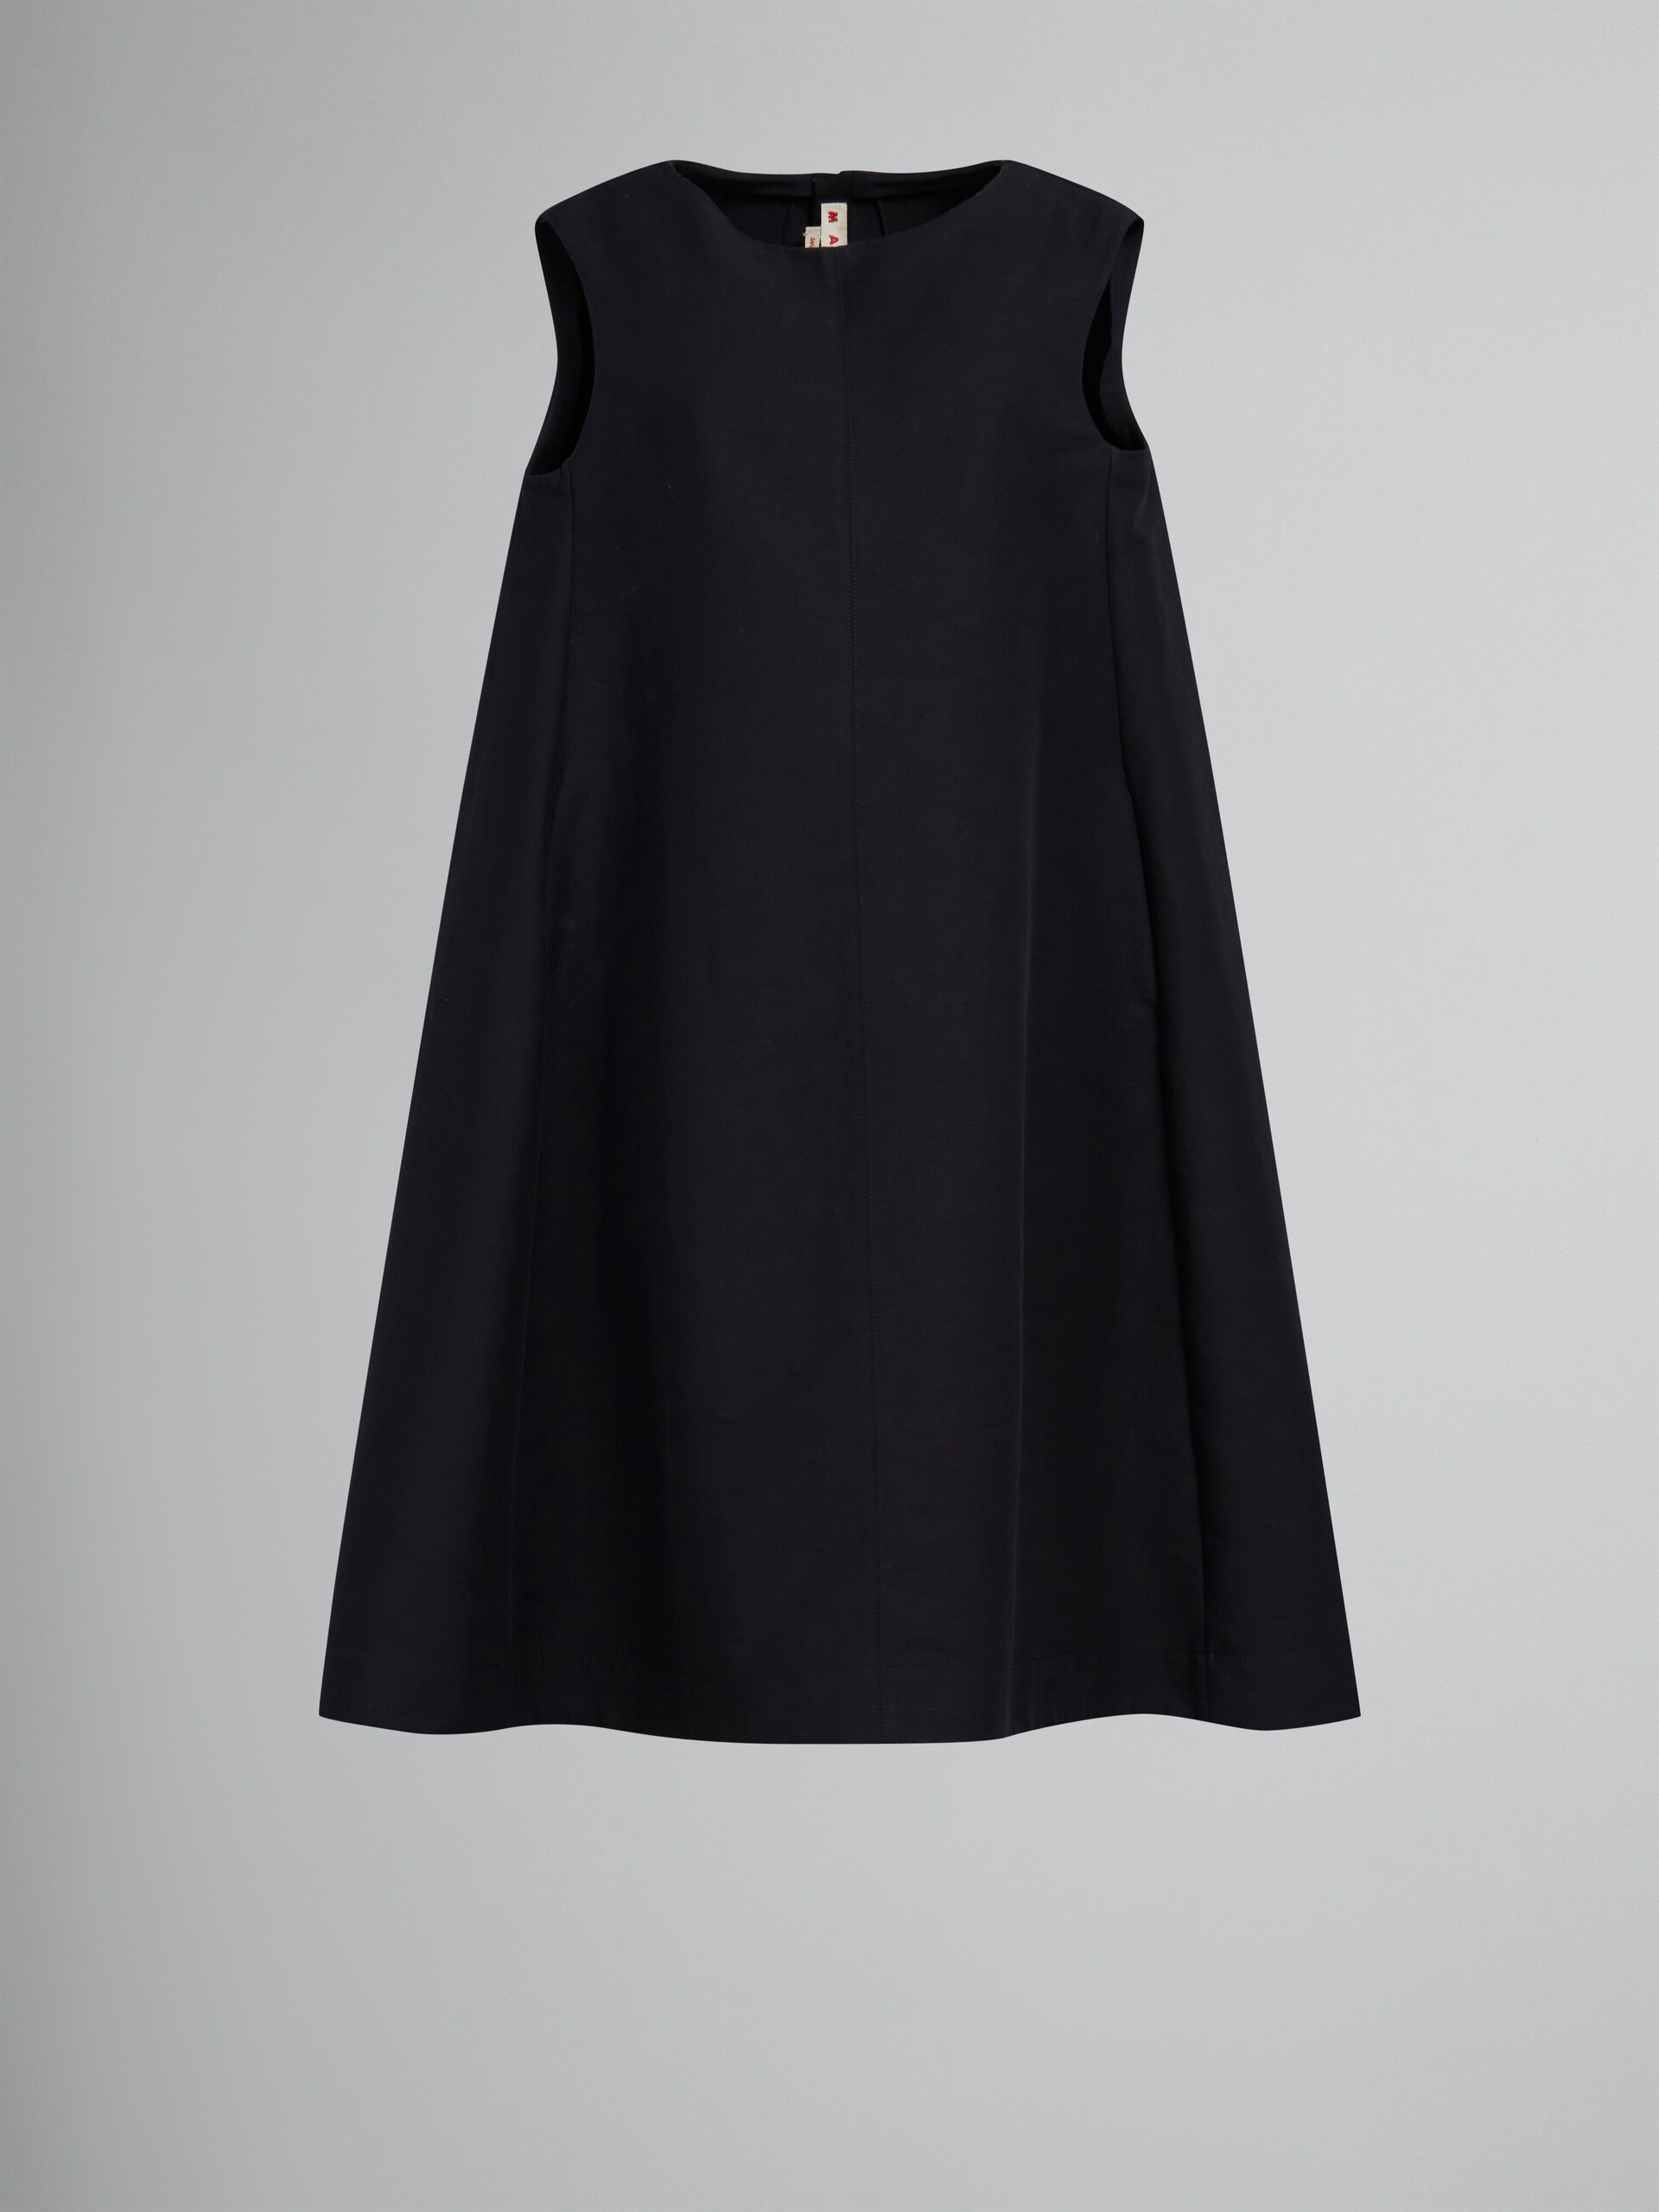 Schwarzes Kokonkleid aus Baumwoll-Cady - Kleider - Image 1